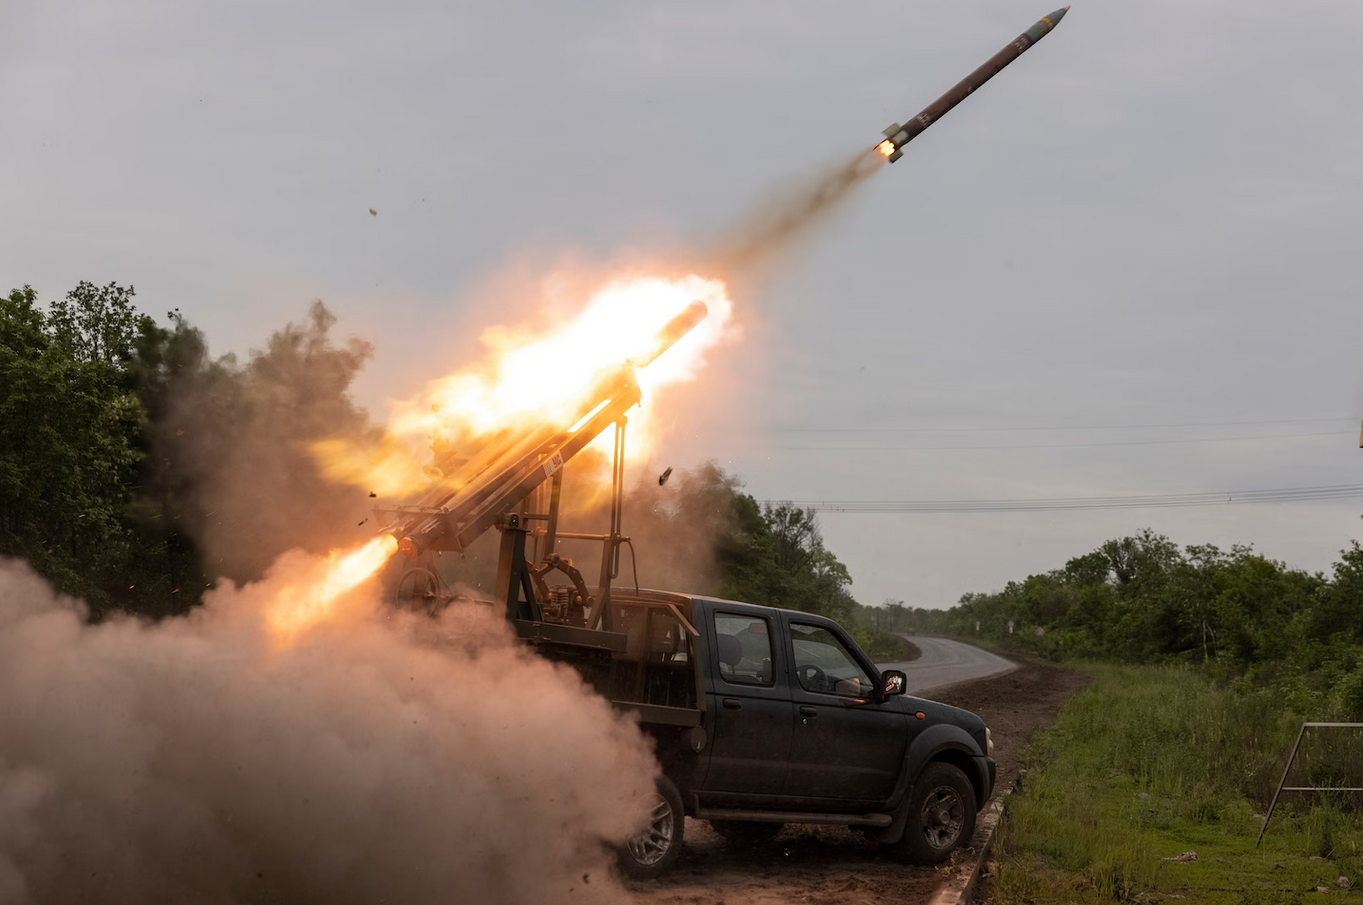 Збройні Сили України використовують унікальну реактивну систему залпового вогню "Цербер" на базі цивільного пікапа